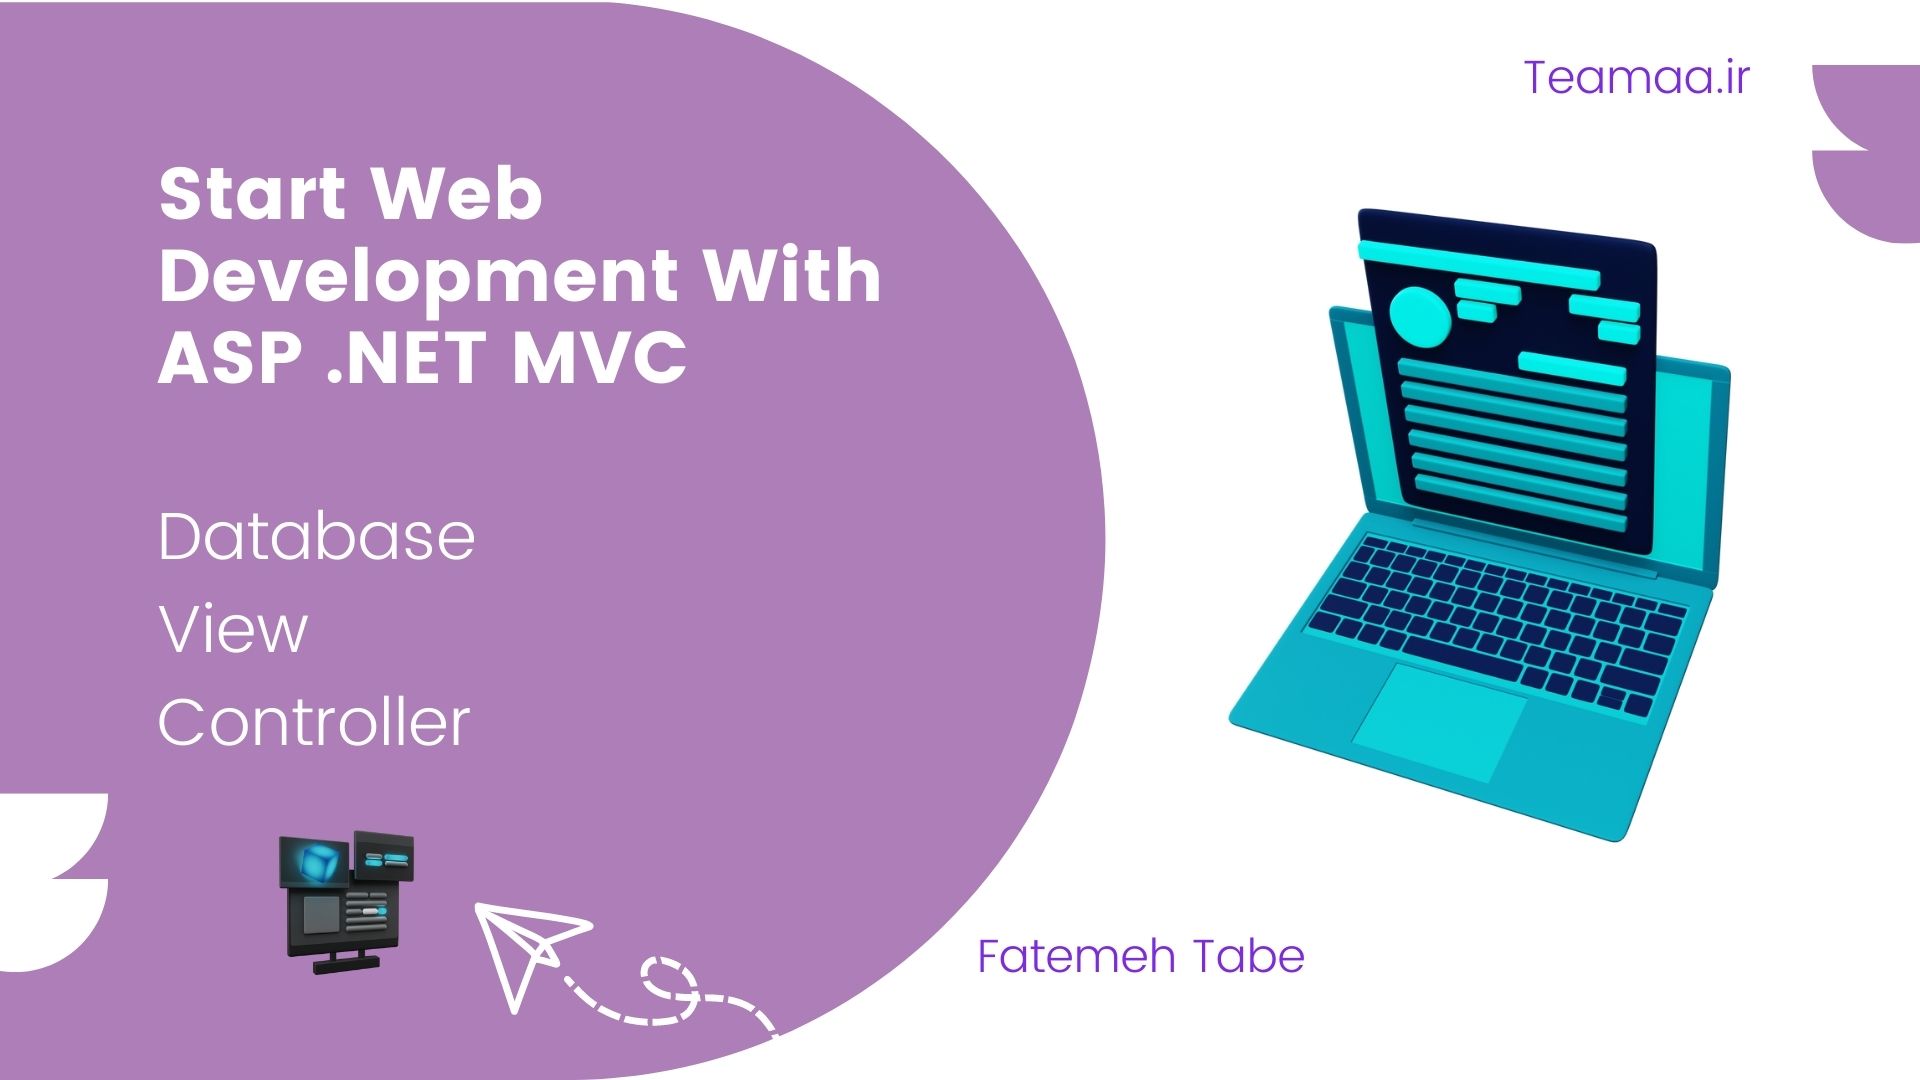 شروع طراحی و توسعه وب سایت با استفاده از ASP .NET MVC